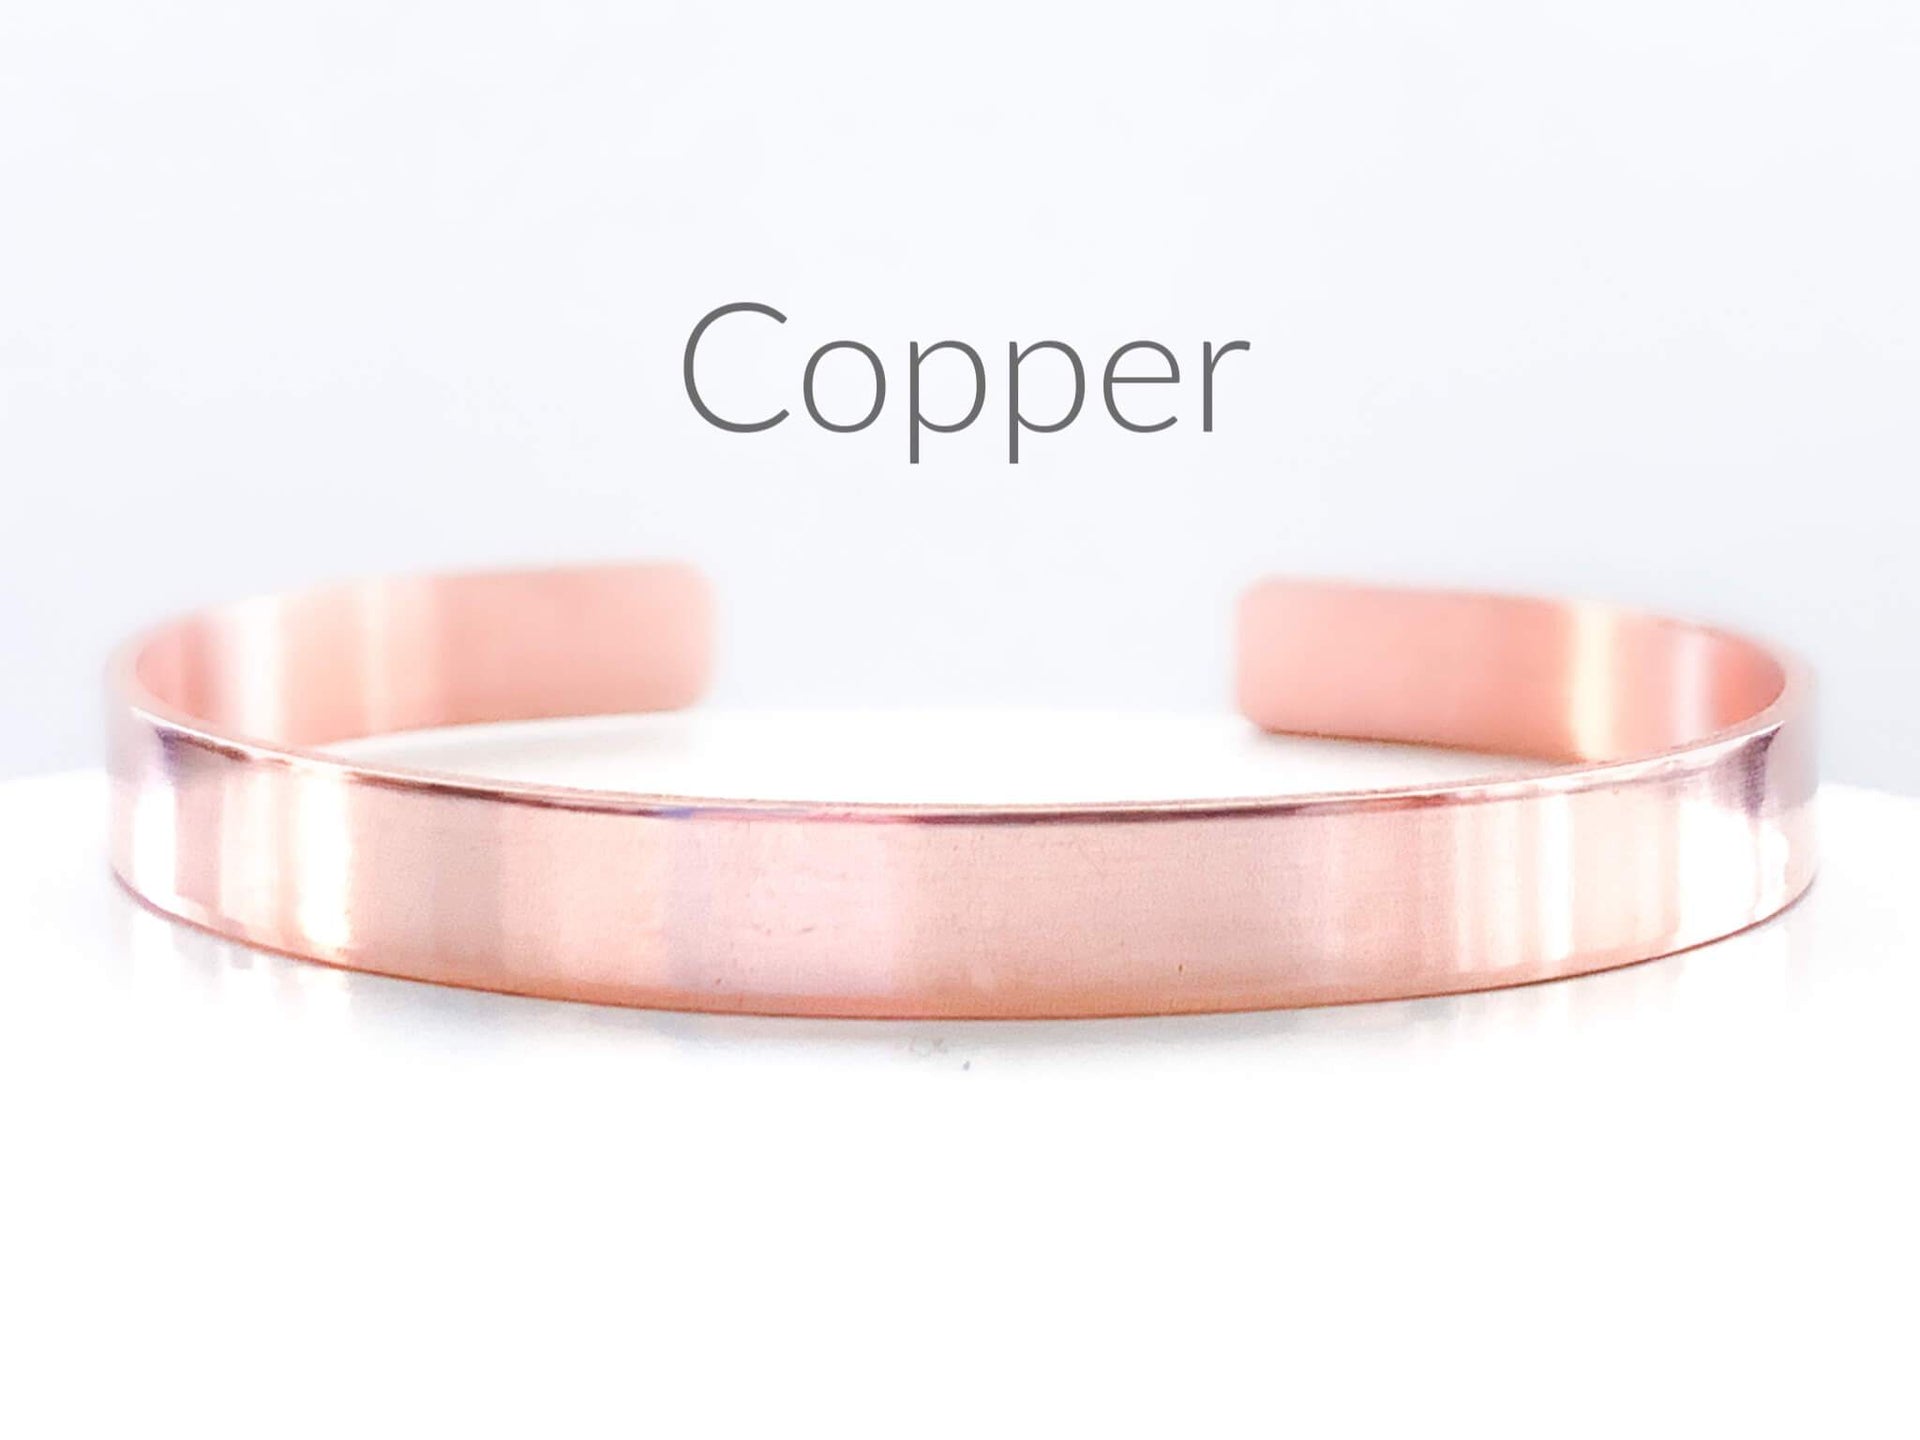 Everything Beautiful Bracelets Copper Beloved Hebrew Bracelet - Brass, Copper or Aluminum